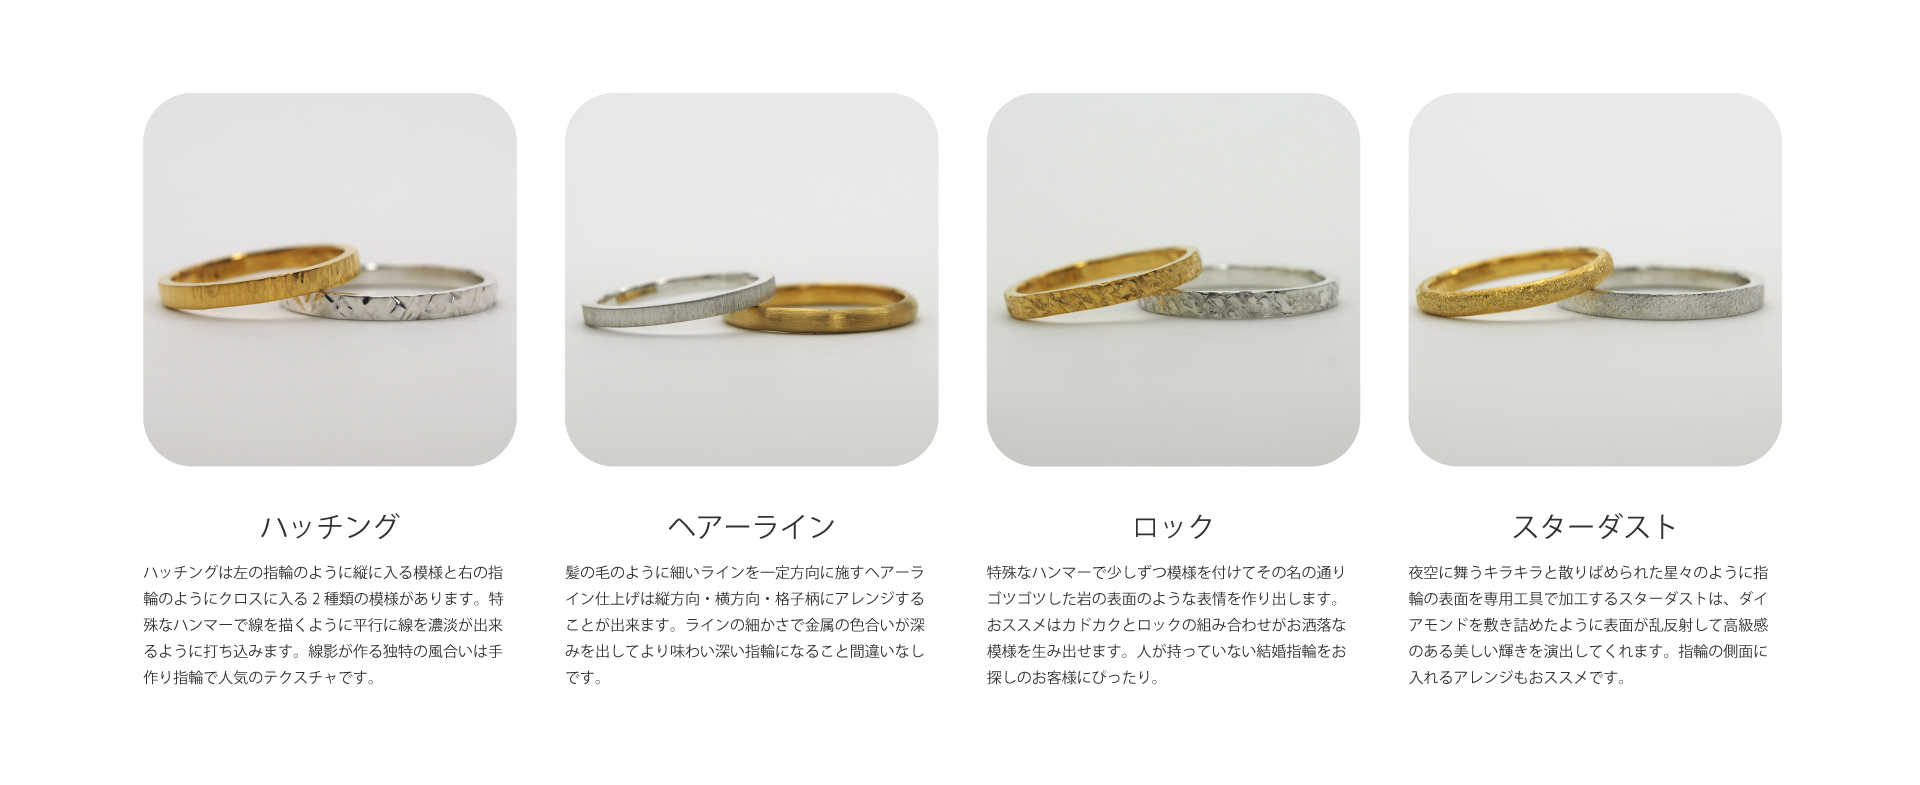 プラチナで作る手作り結婚指輪は鏡面・槌目・マット・カットアウト・ハッチング・ヘアーライン・ロック・スターダストを組み合わせることが出来ます